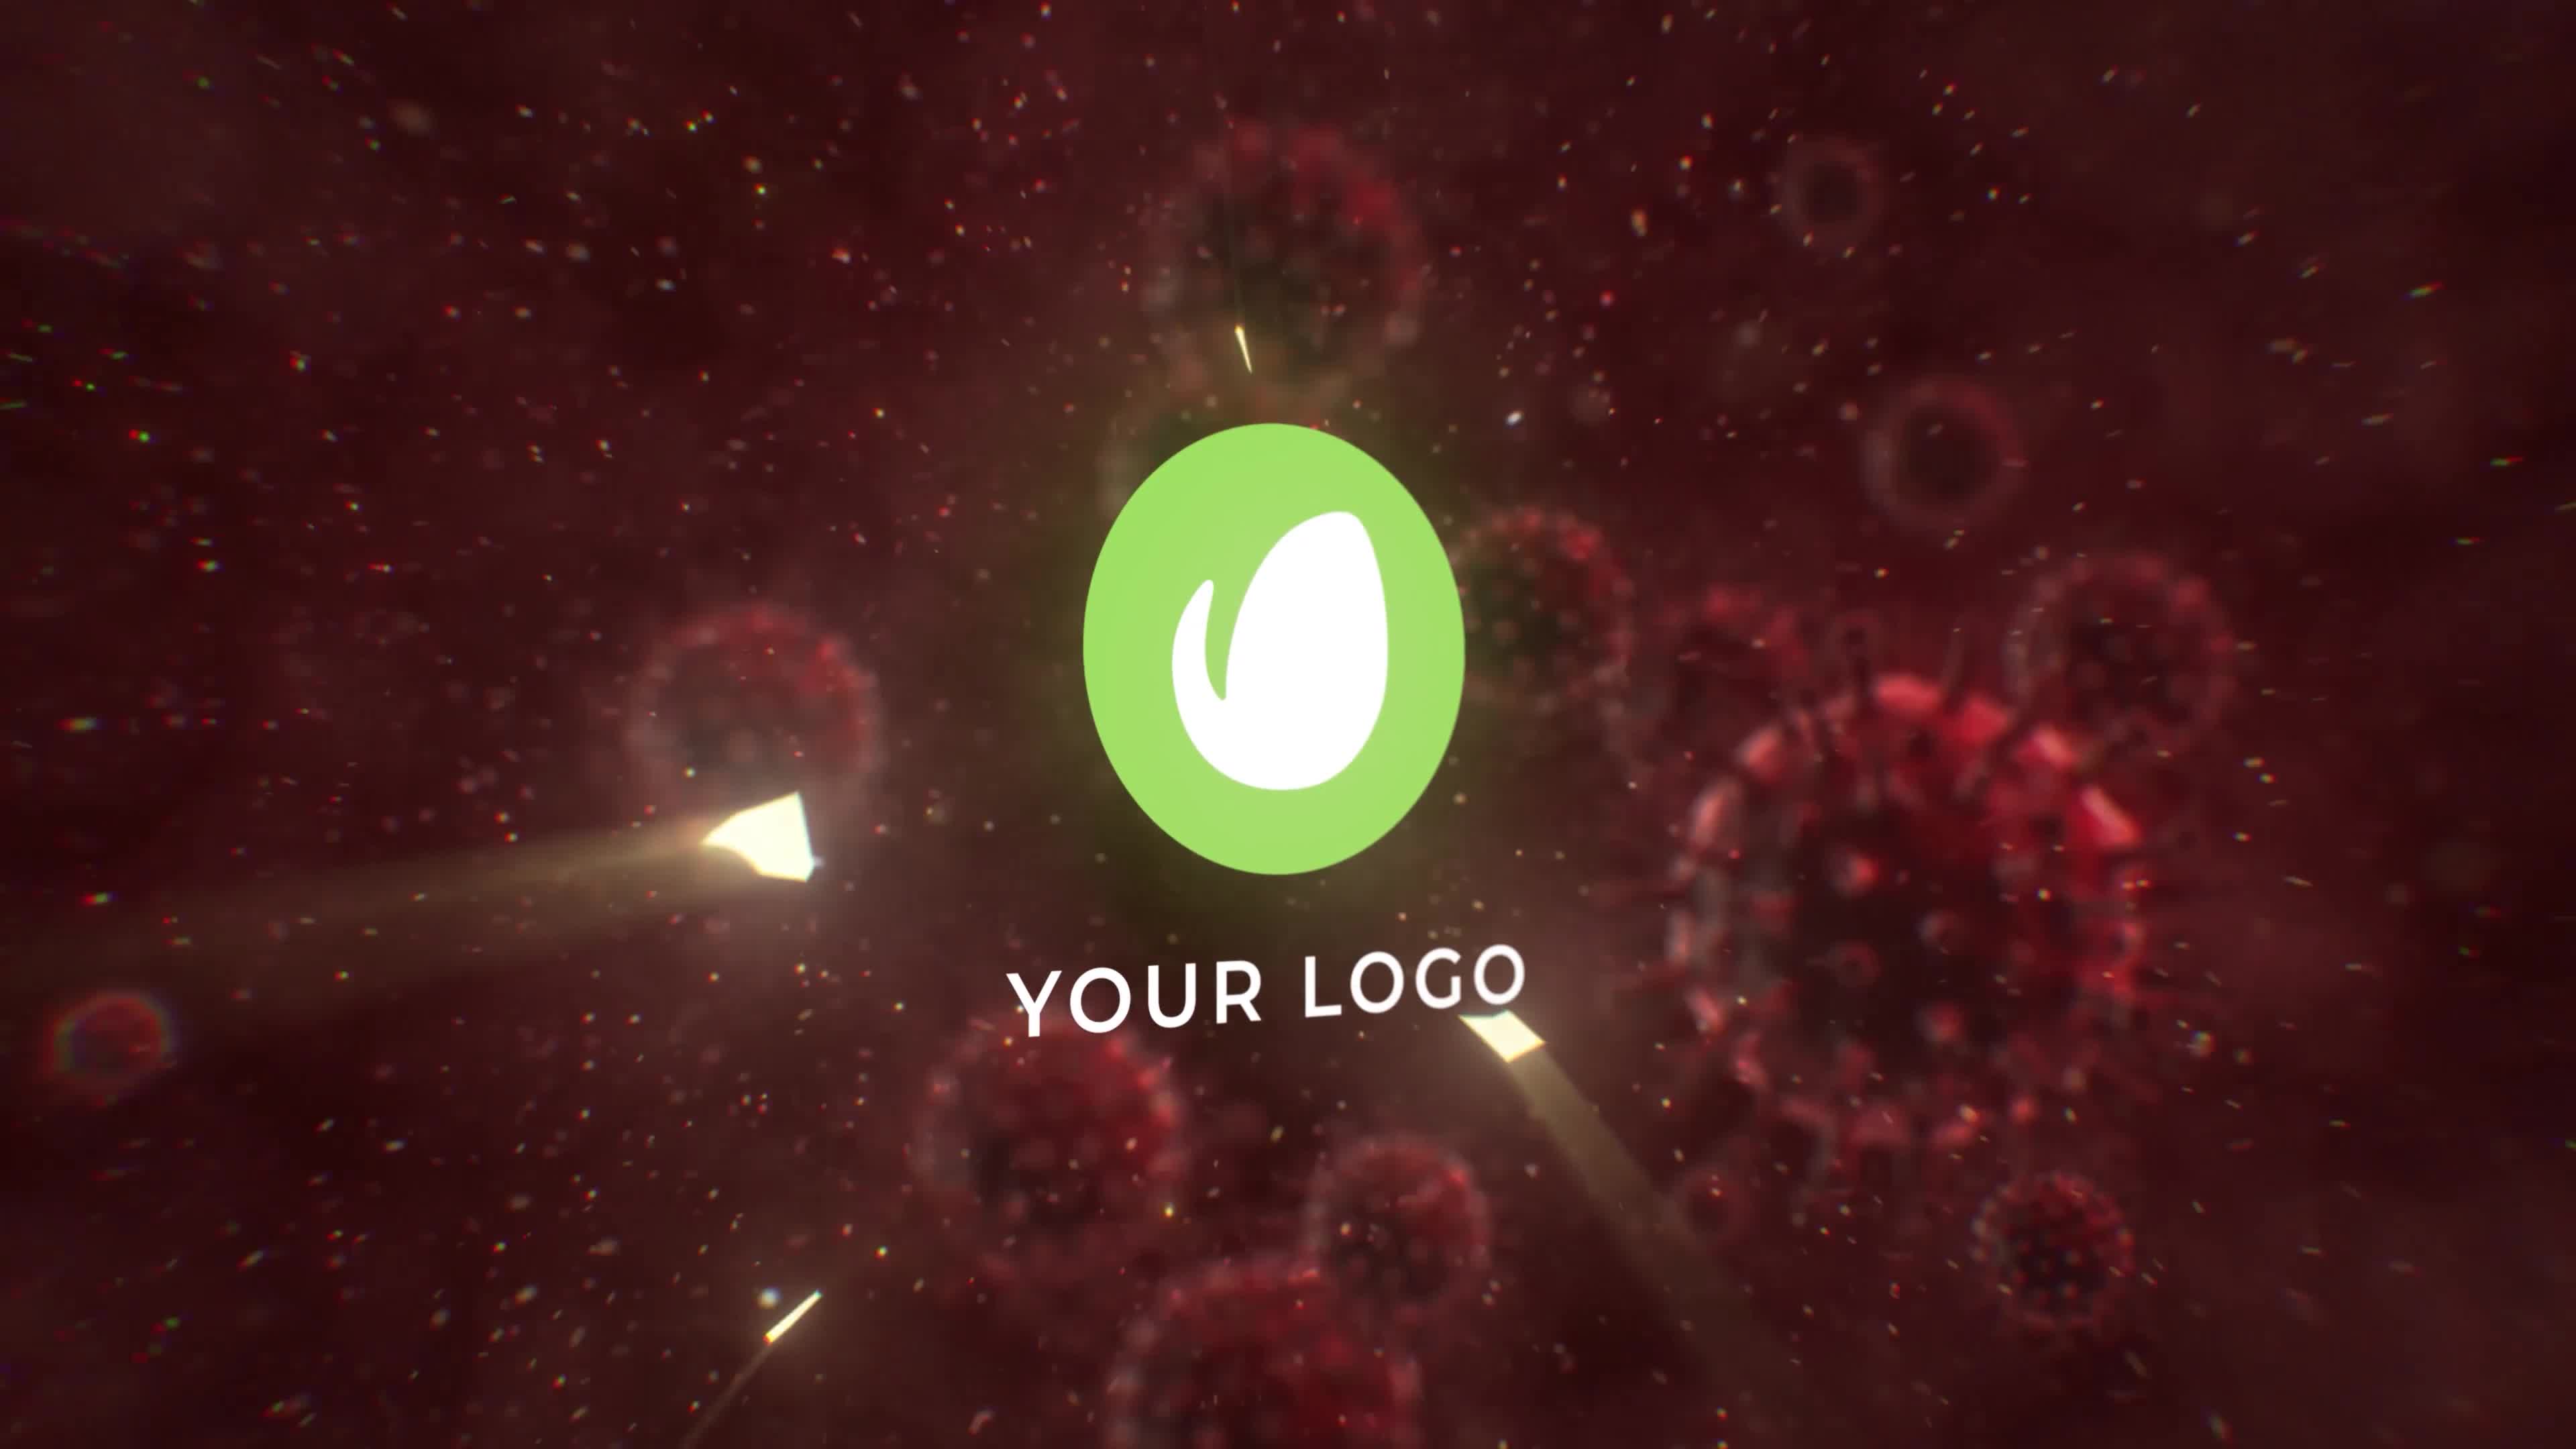 Virus Destruction Logo Reveal Videohive 26328449 Premiere Pro Image 7